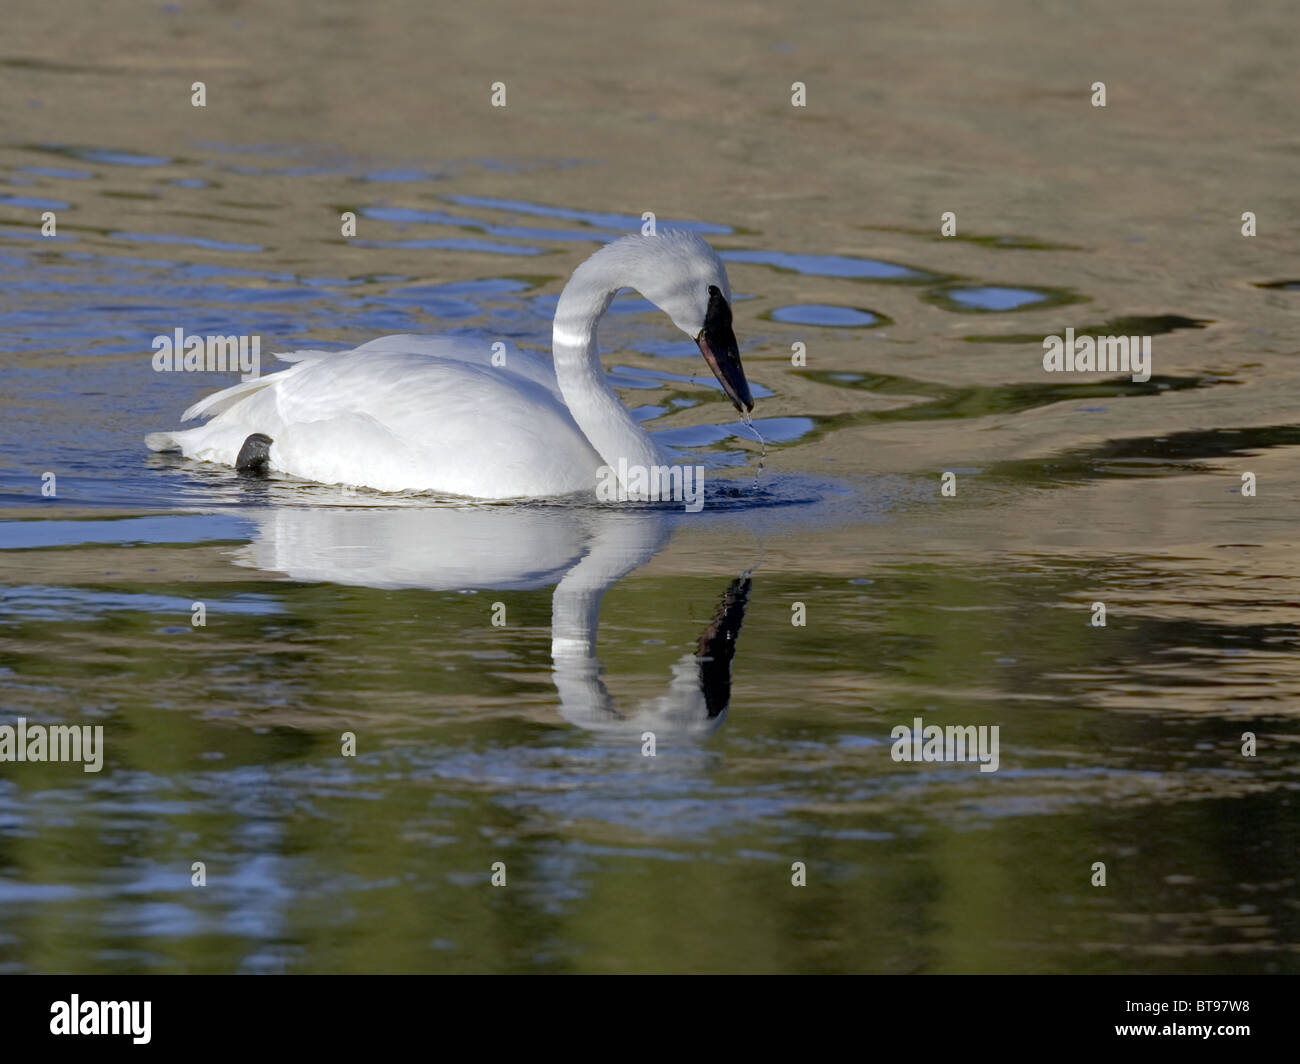 Trumpeter swan con reflejo en el agua Foto de stock